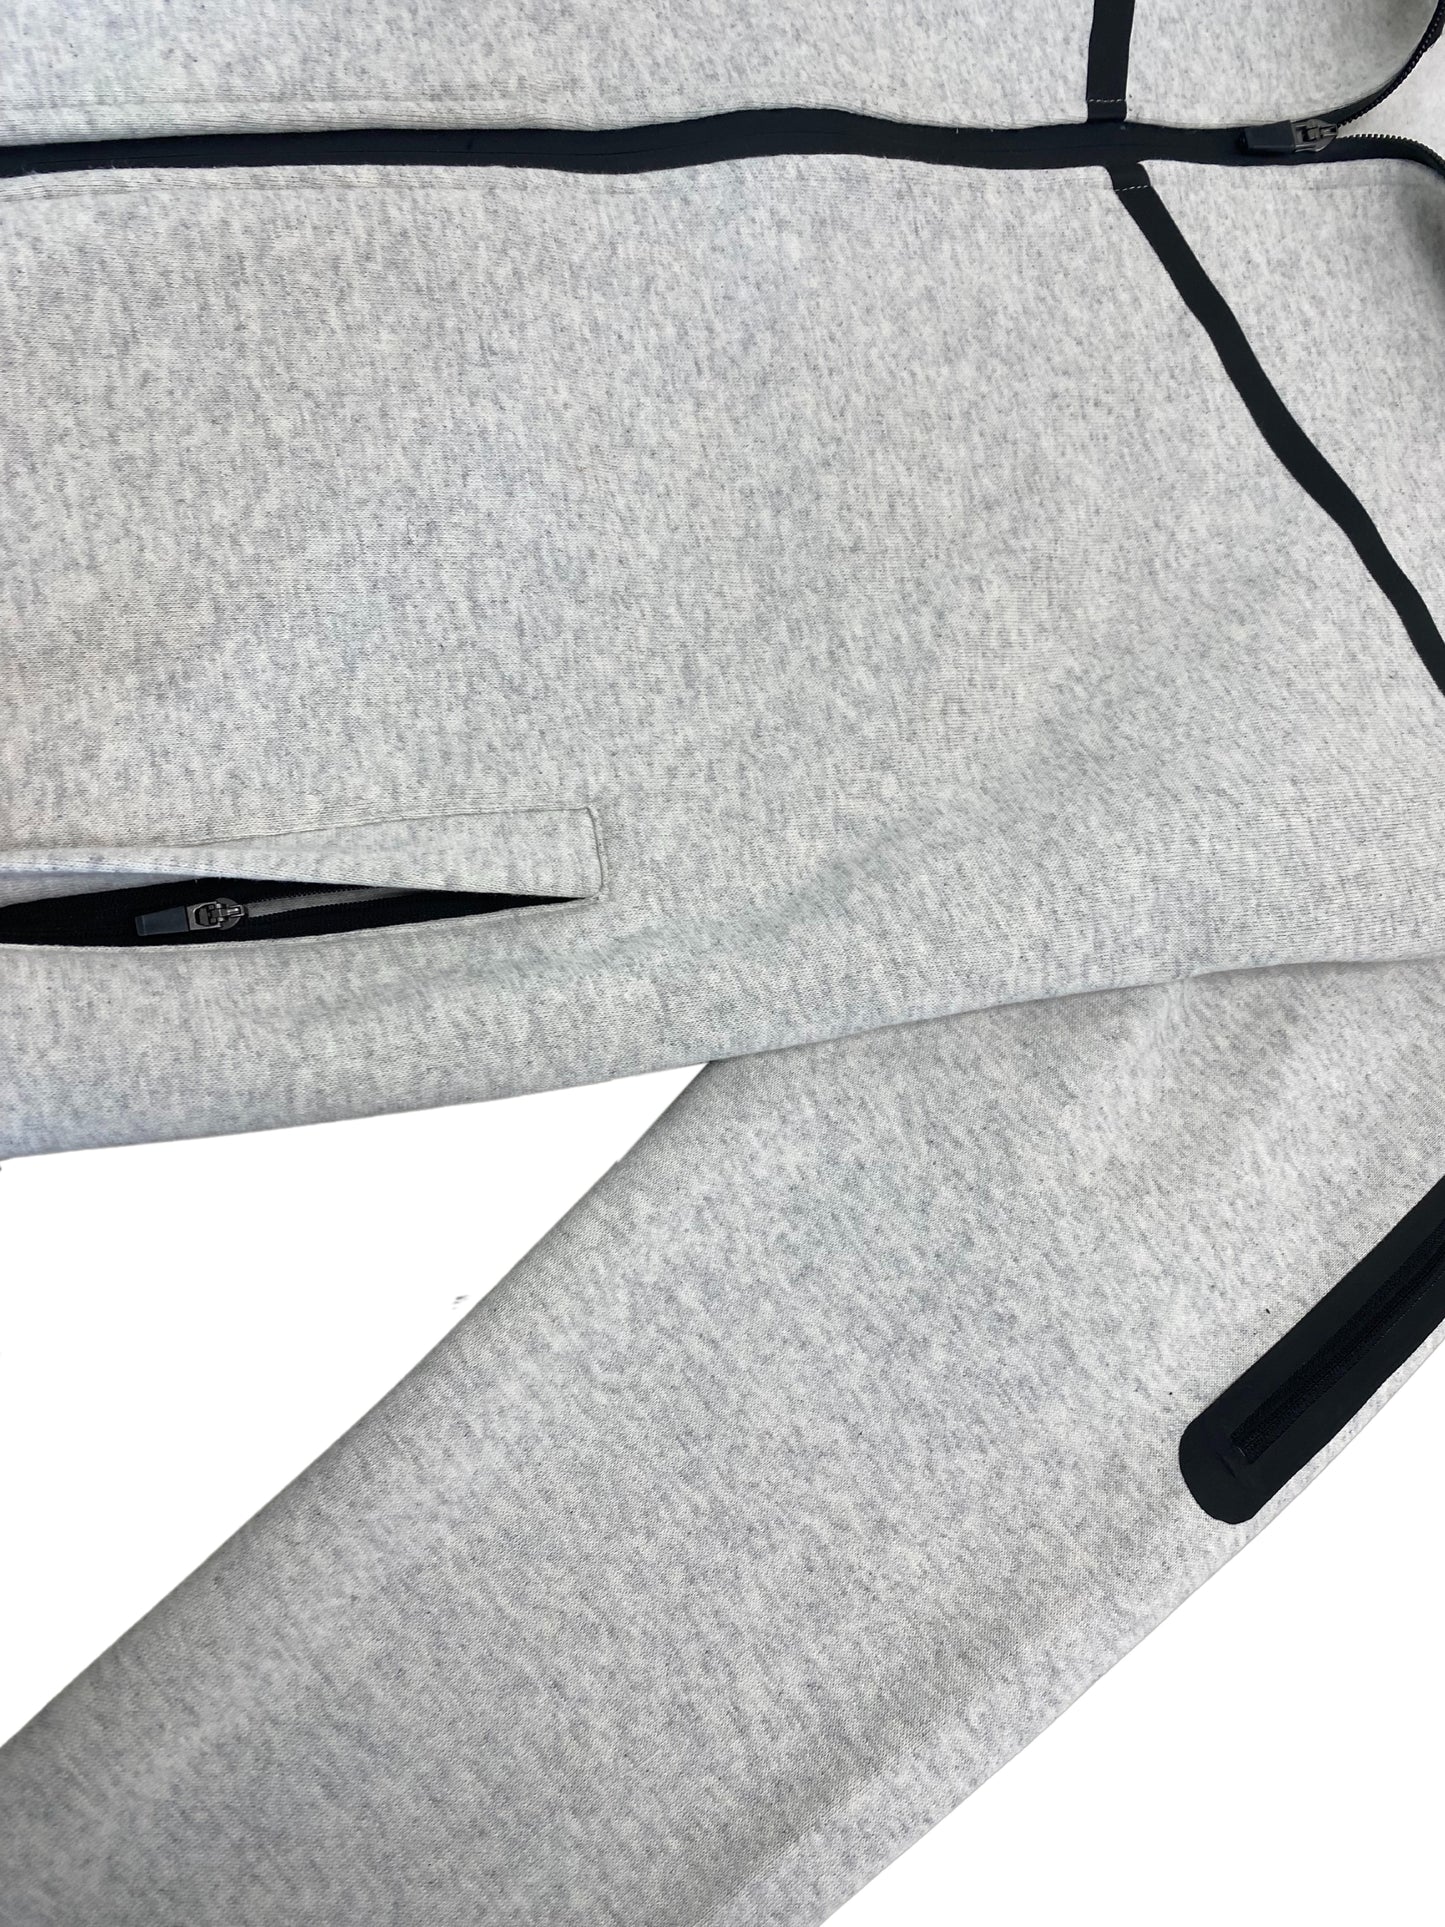 Men’s 2-Piece Fleece Sweatsuit Tech Performance Heavy Winter Sweat Jacket & Fleece Pants